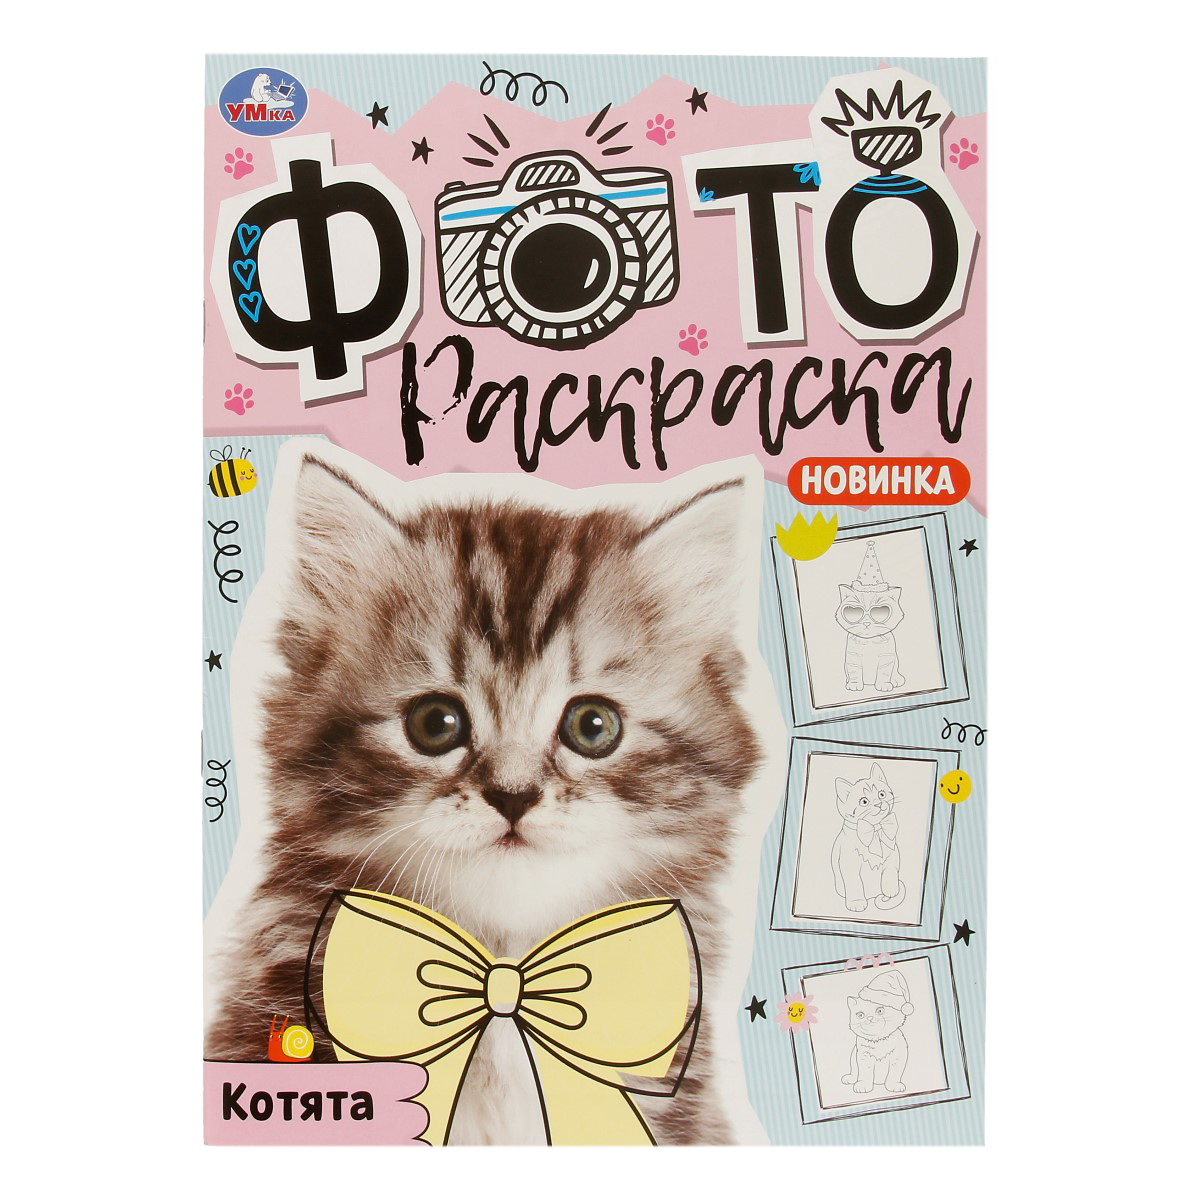 Раскраска котенок с бабочкой в корзине распечатать | Раскраски коты, котята и кошки